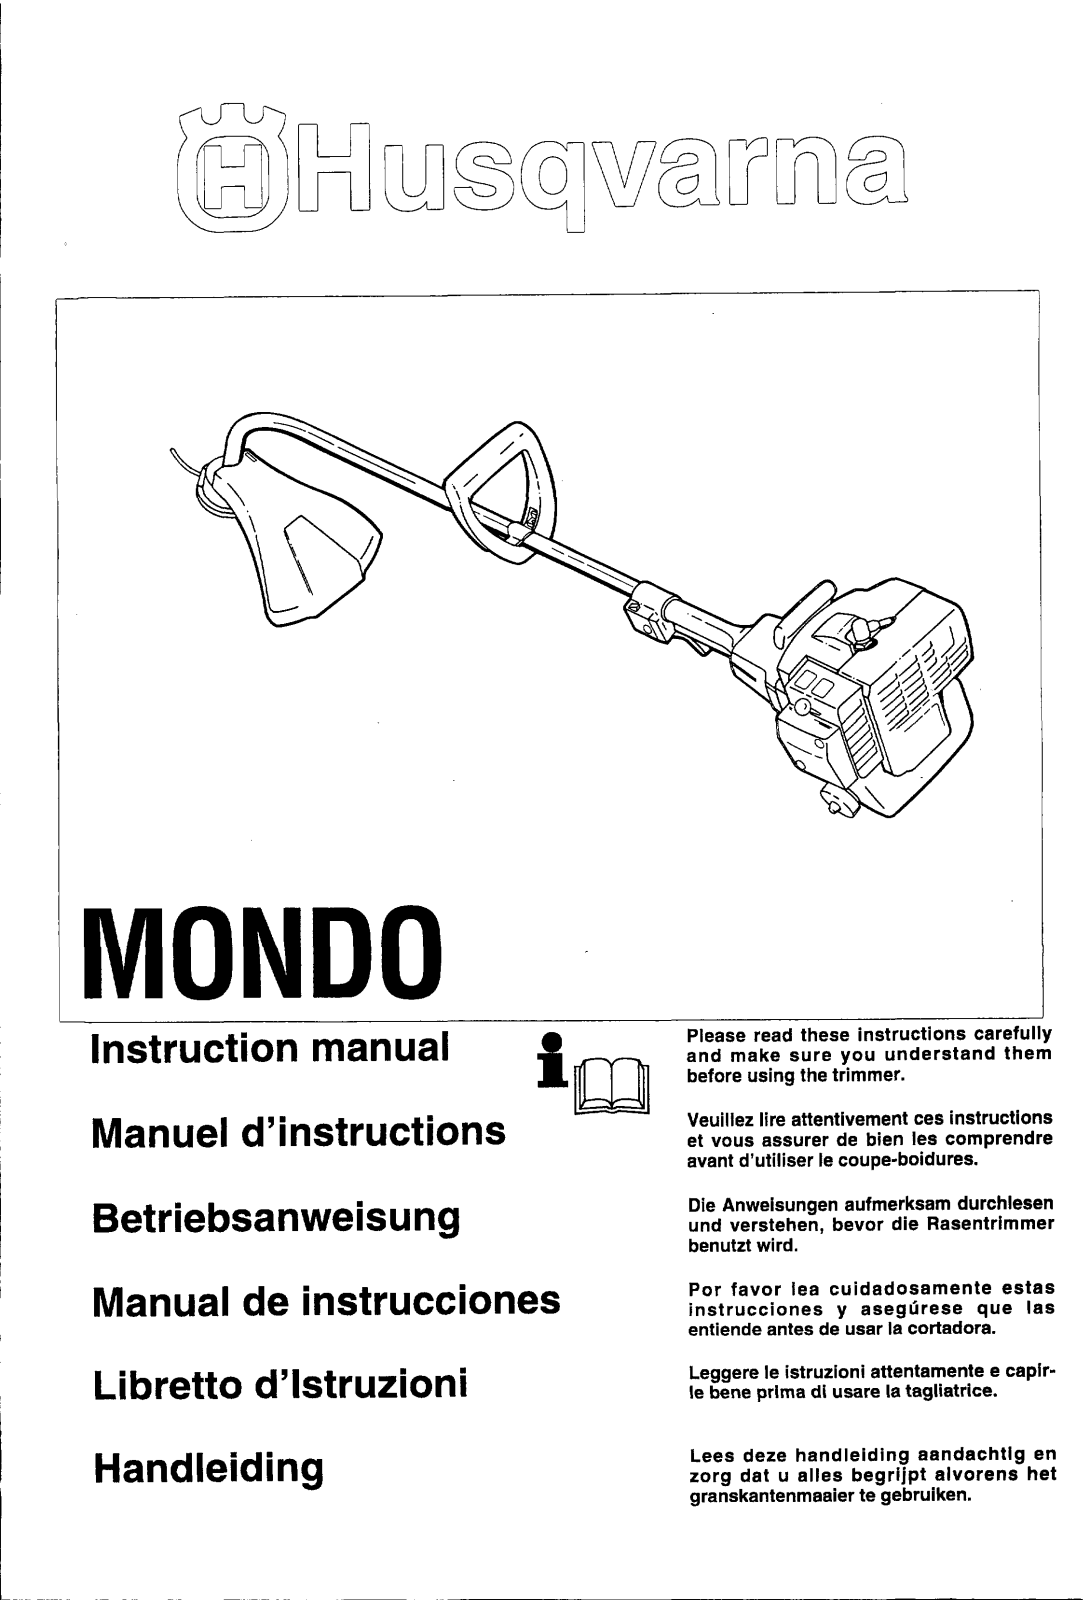 Husqvarna MONDO User Manual